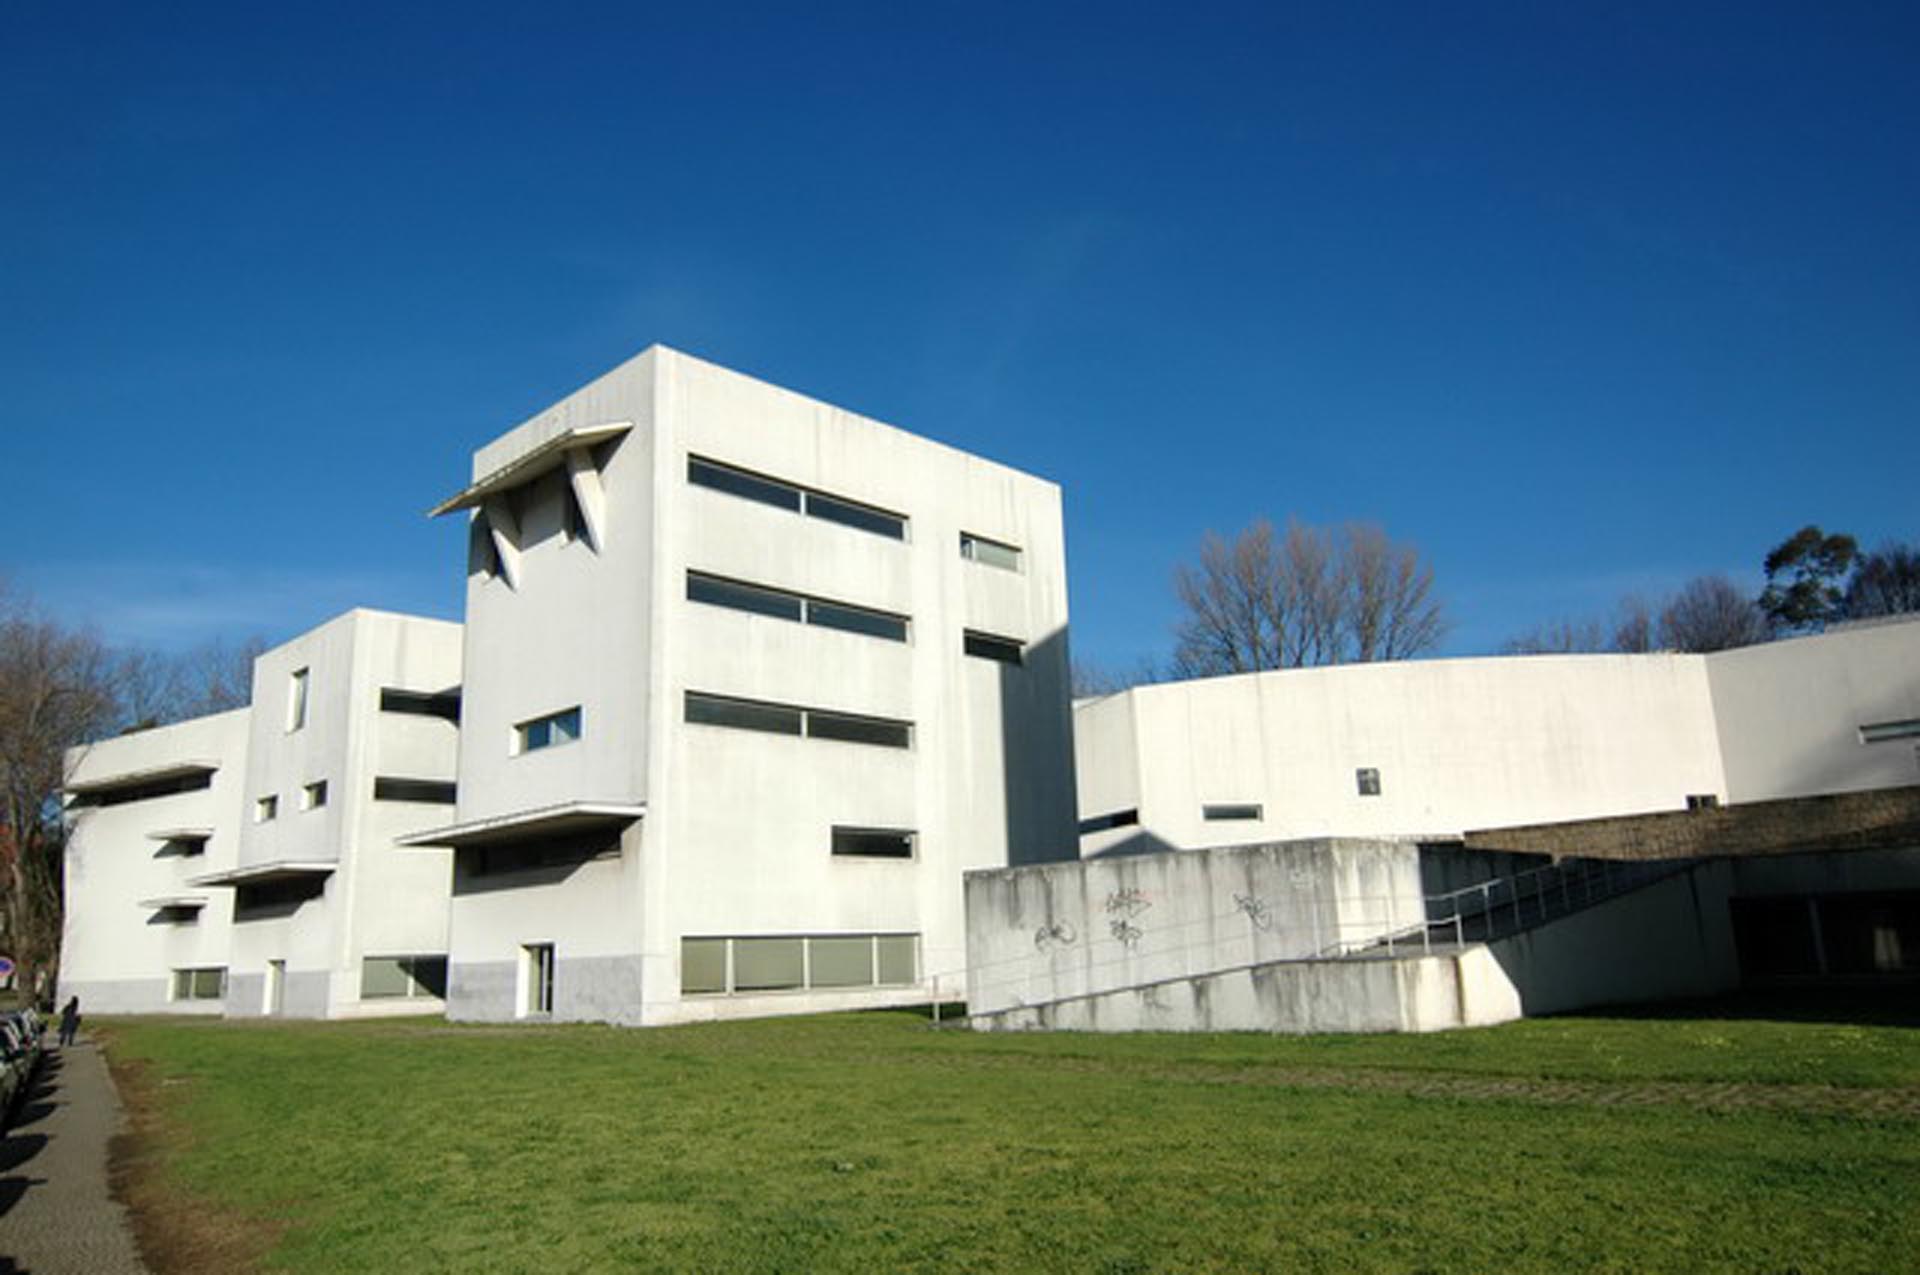 「波爾圖建築學院」（FAUP- School of Architecture at Oporto University） ，圖片來源：準建築人手札網站https://www.flickr.com/photos/eager/6498078195